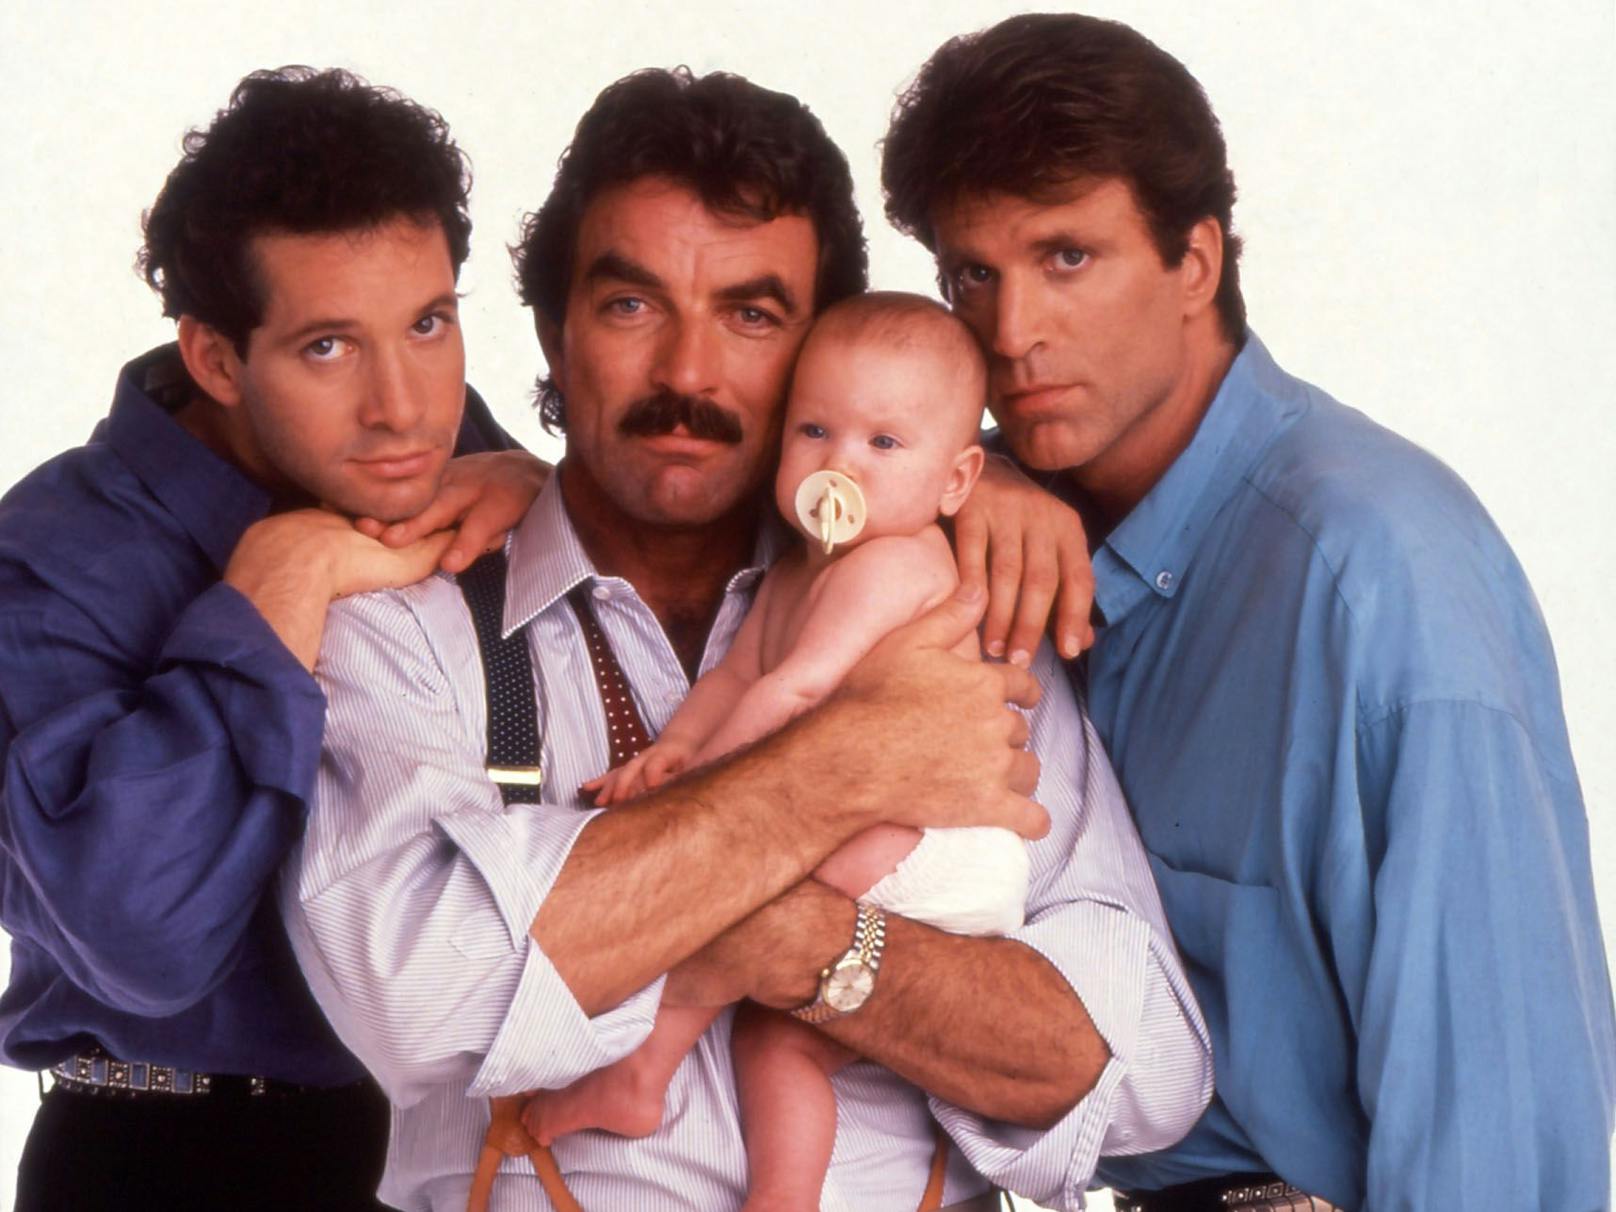 ... der Komödie "Drei Männer und ein Baby" (1987) zwei weitere Blockbuster. Steve spielte an der Seite von <strong>Tom Sellek</strong> (Magnum) und <strong>Ted Danson</strong> (Cheers, CSI) einen Vater wider Willens.